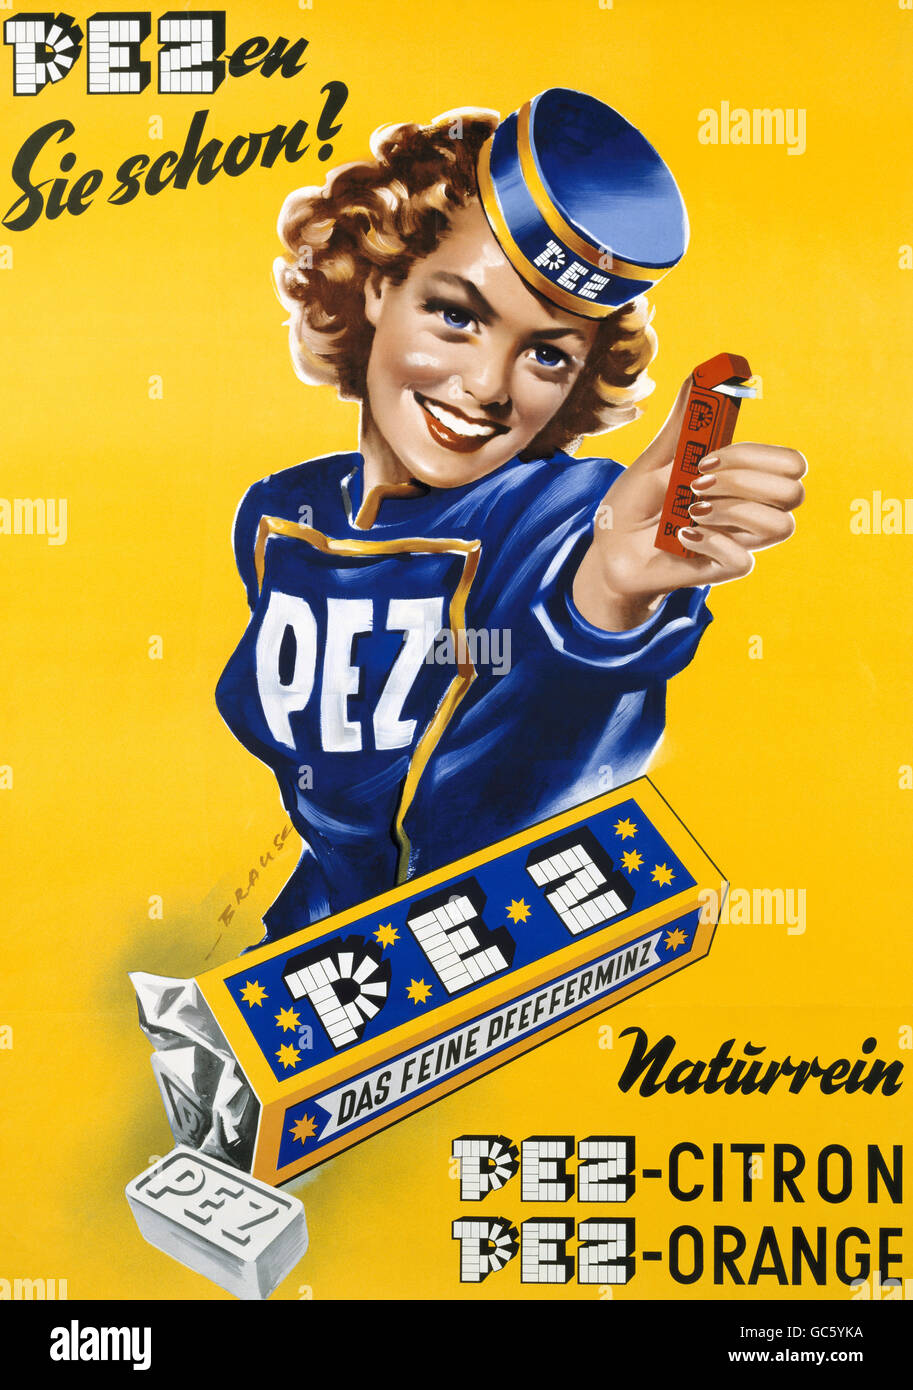 Publicité, confiserie, bonbons, PEZ, affiche « Do You pez déjà? », PEZ citron, PEZ Orange, Munich, années 1950, droits supplémentaires-Clearences-non disponible Banque D'Images